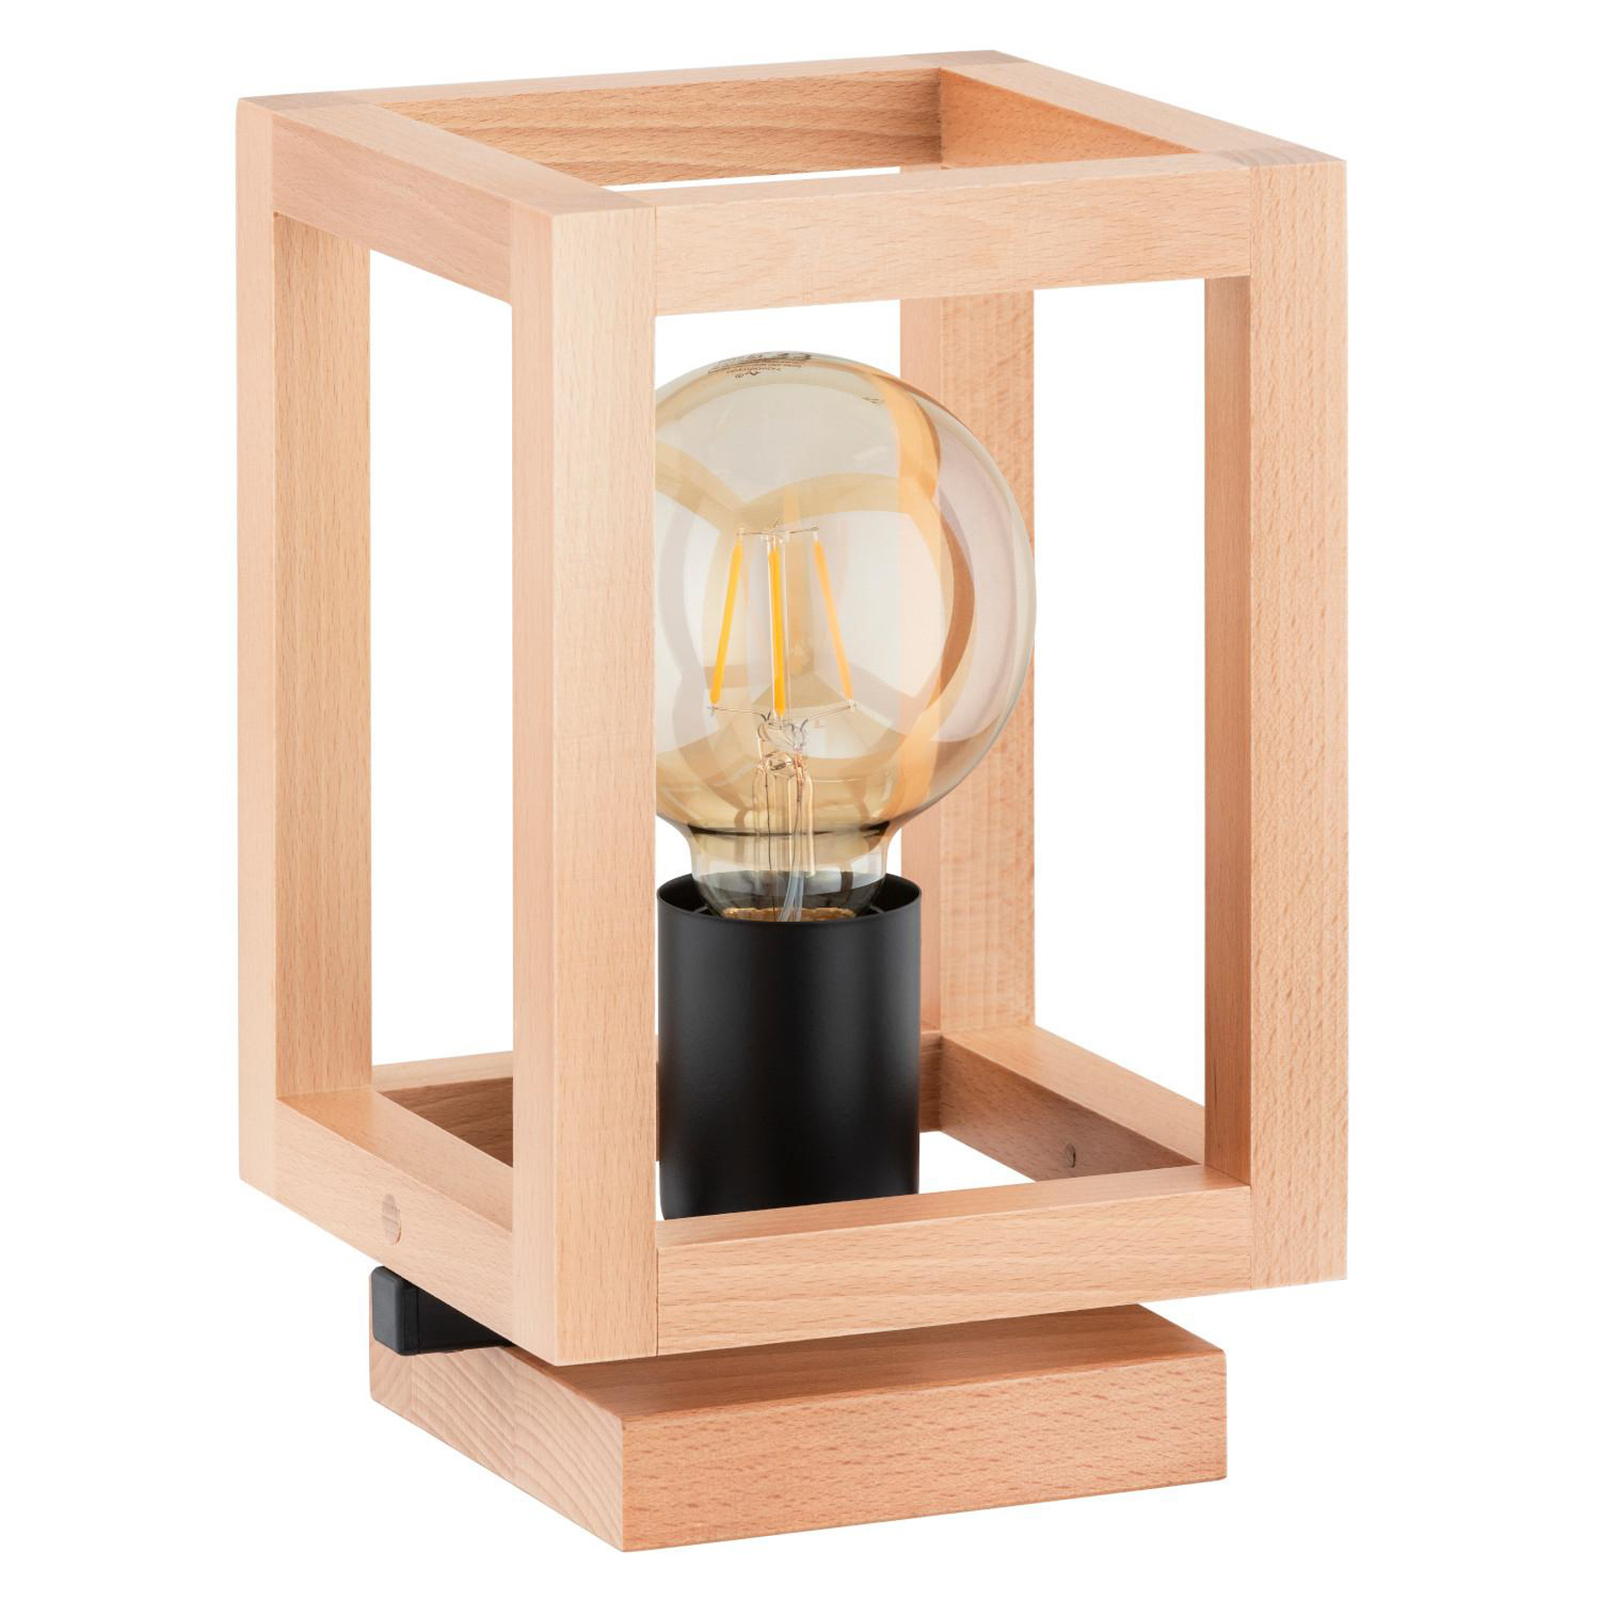 Настолна лампа Pako, форма на клетка, куб, дърво, 16 x 16 x 25 cm